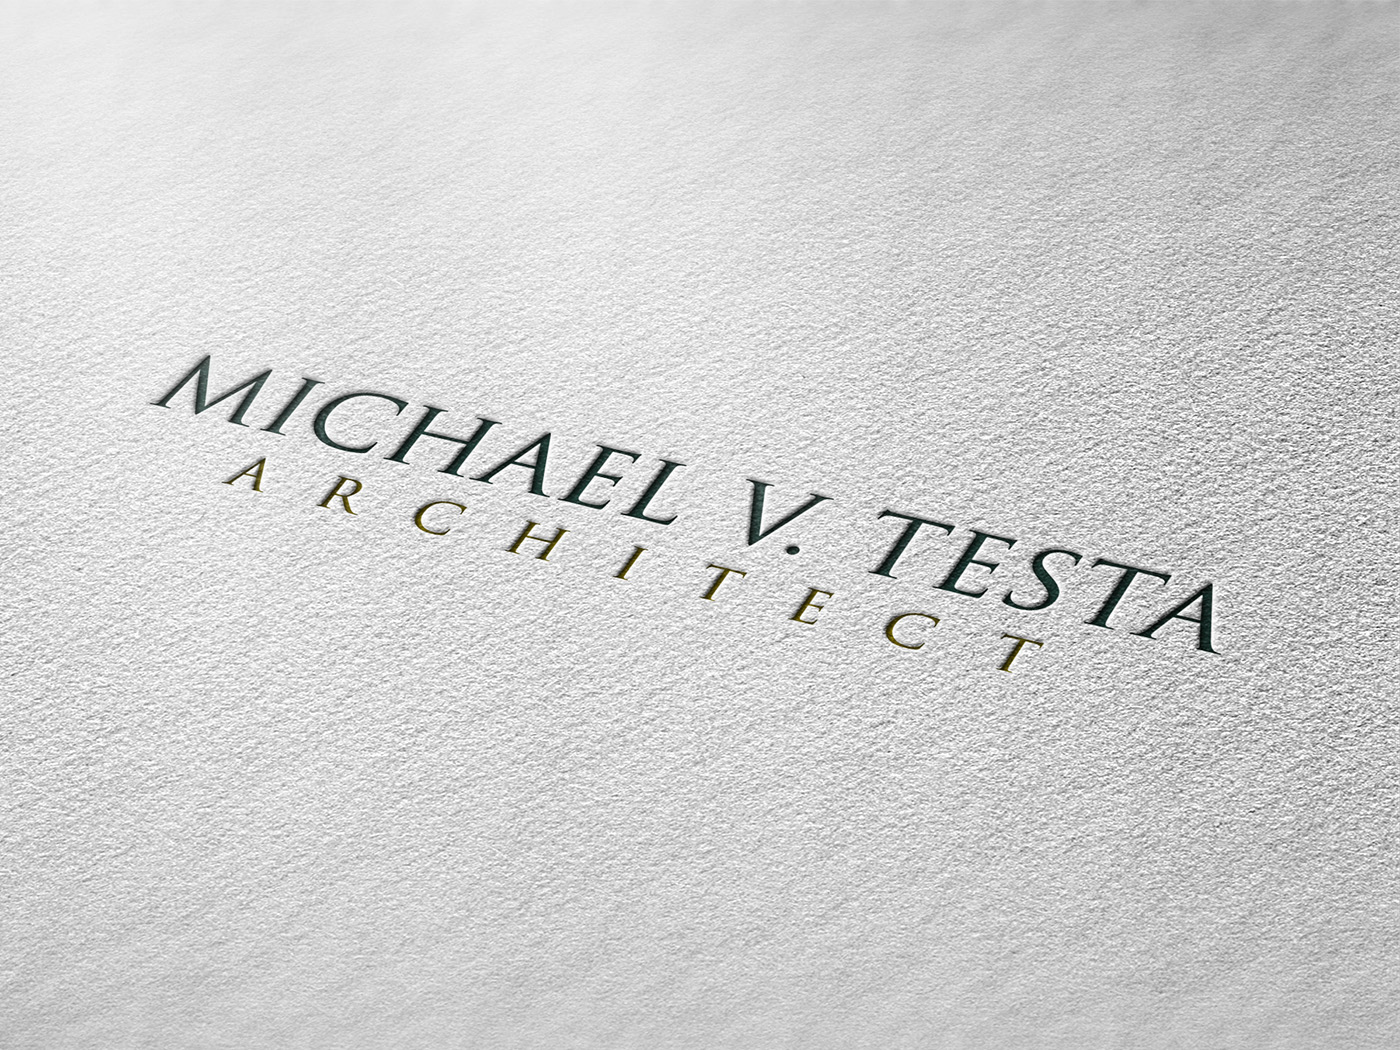 architect logo rework new jersey project portfolio projects wordpress portfolio